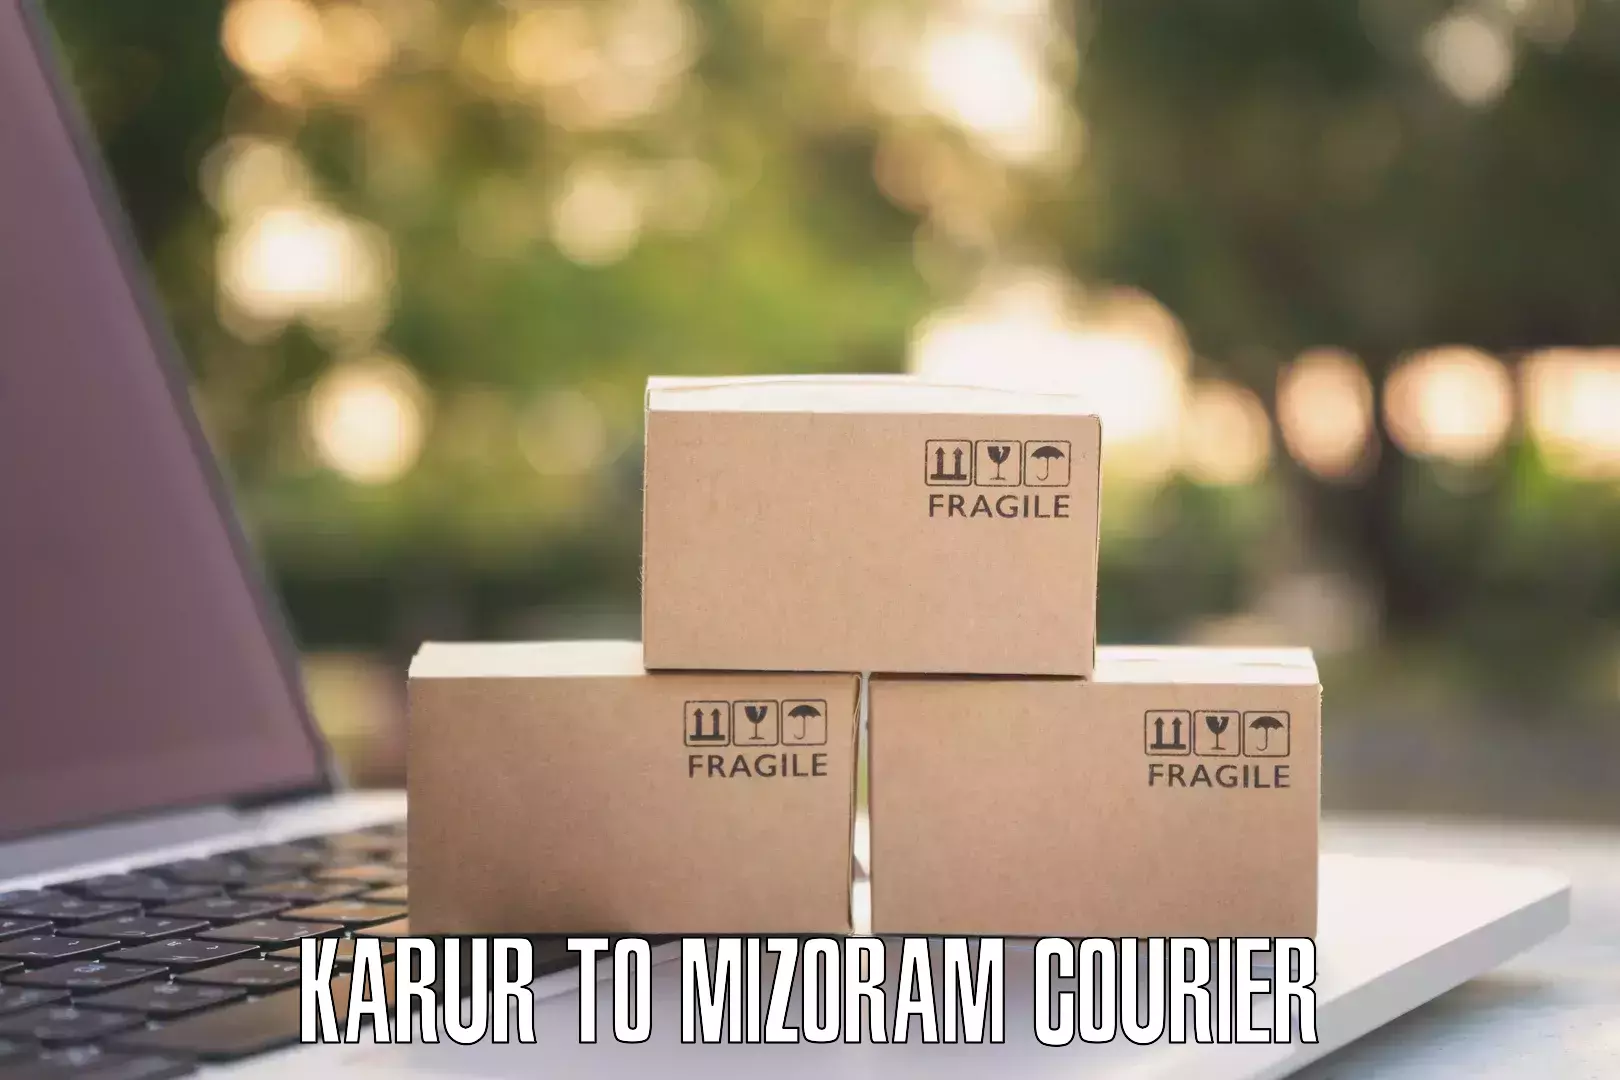 Efficient cargo services Karur to Thenzawl